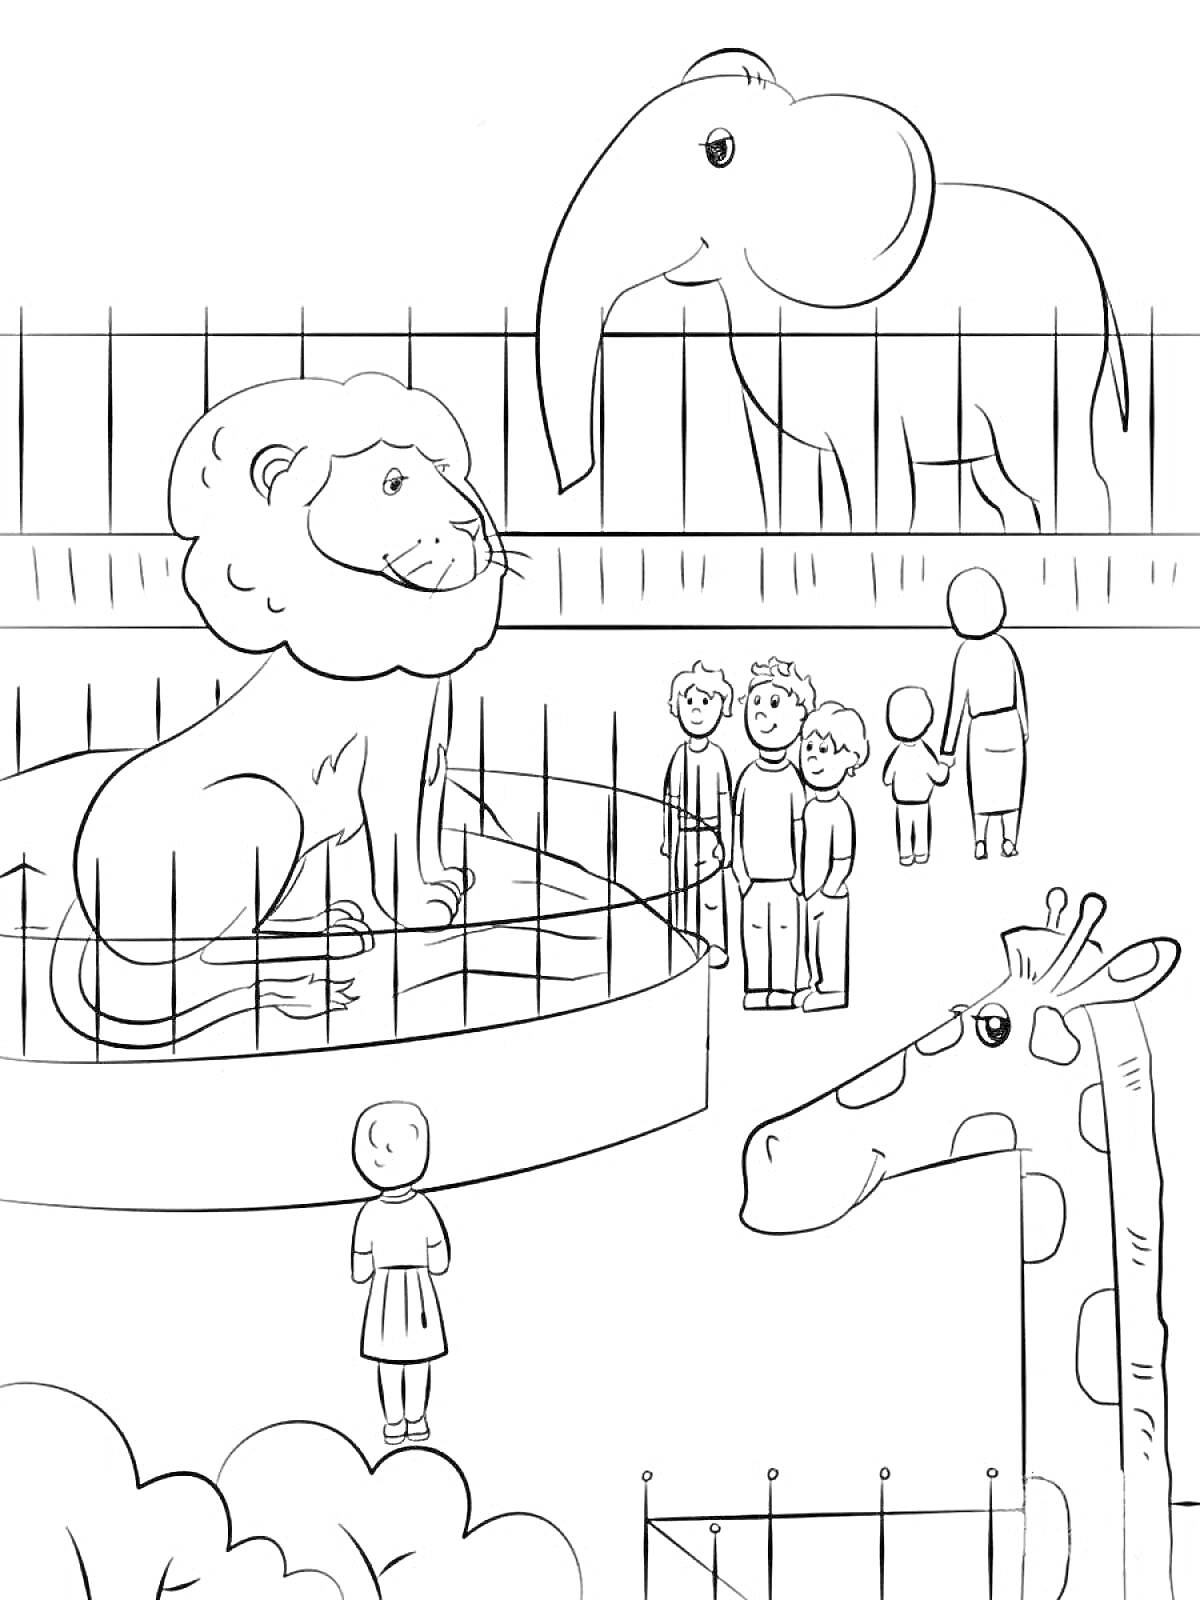 РаскраскаЗоопарк с львом, жирафом, слоном и посетителями